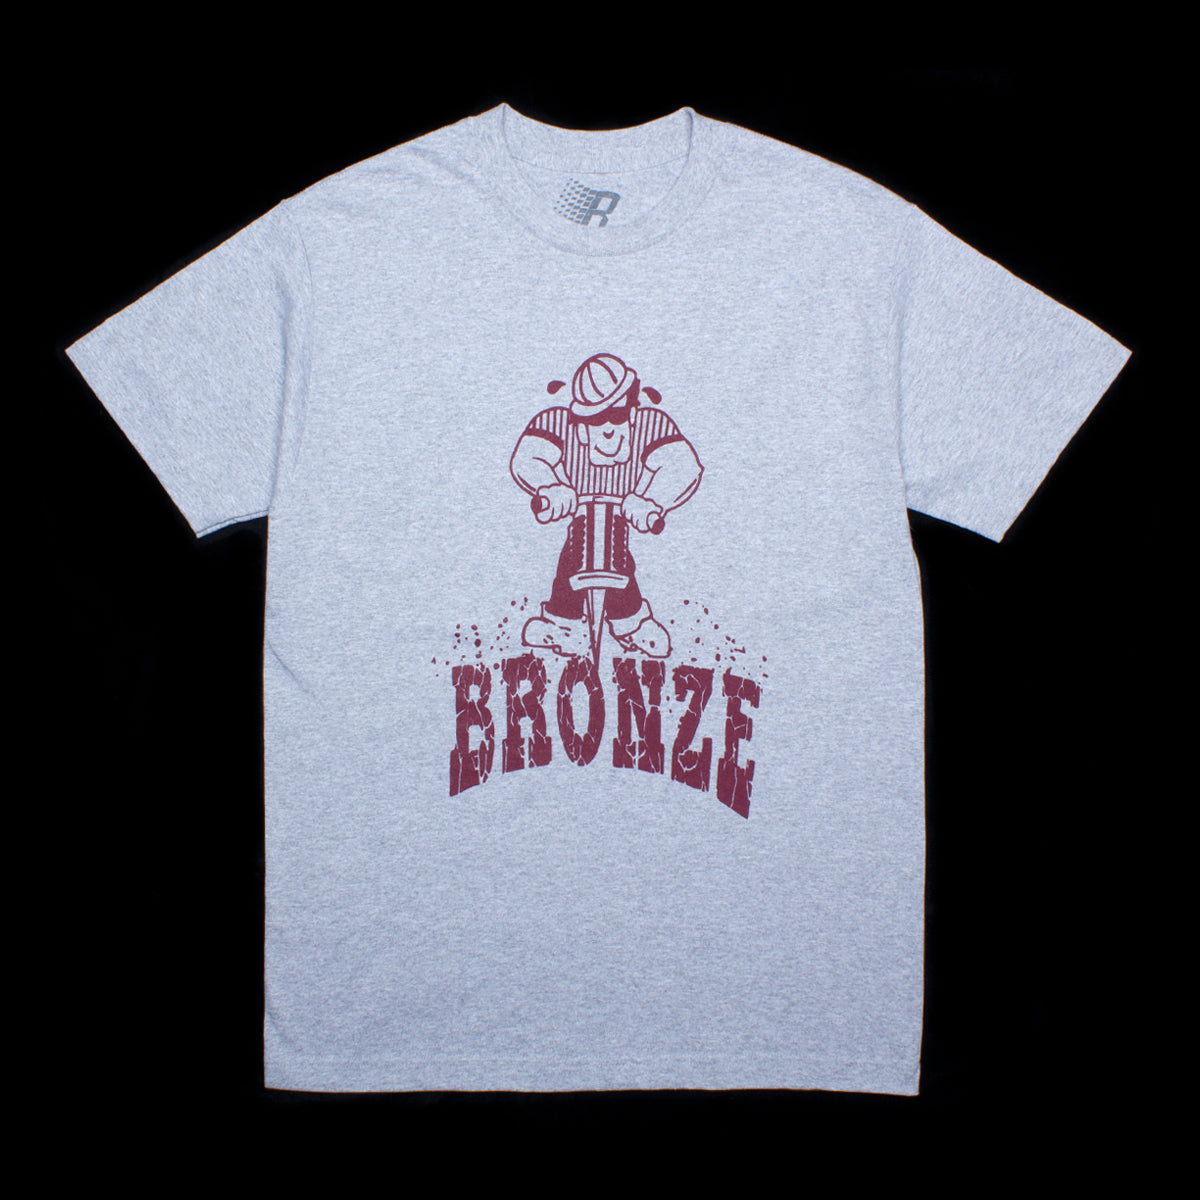 Bronze Jackhammer T-Shirt